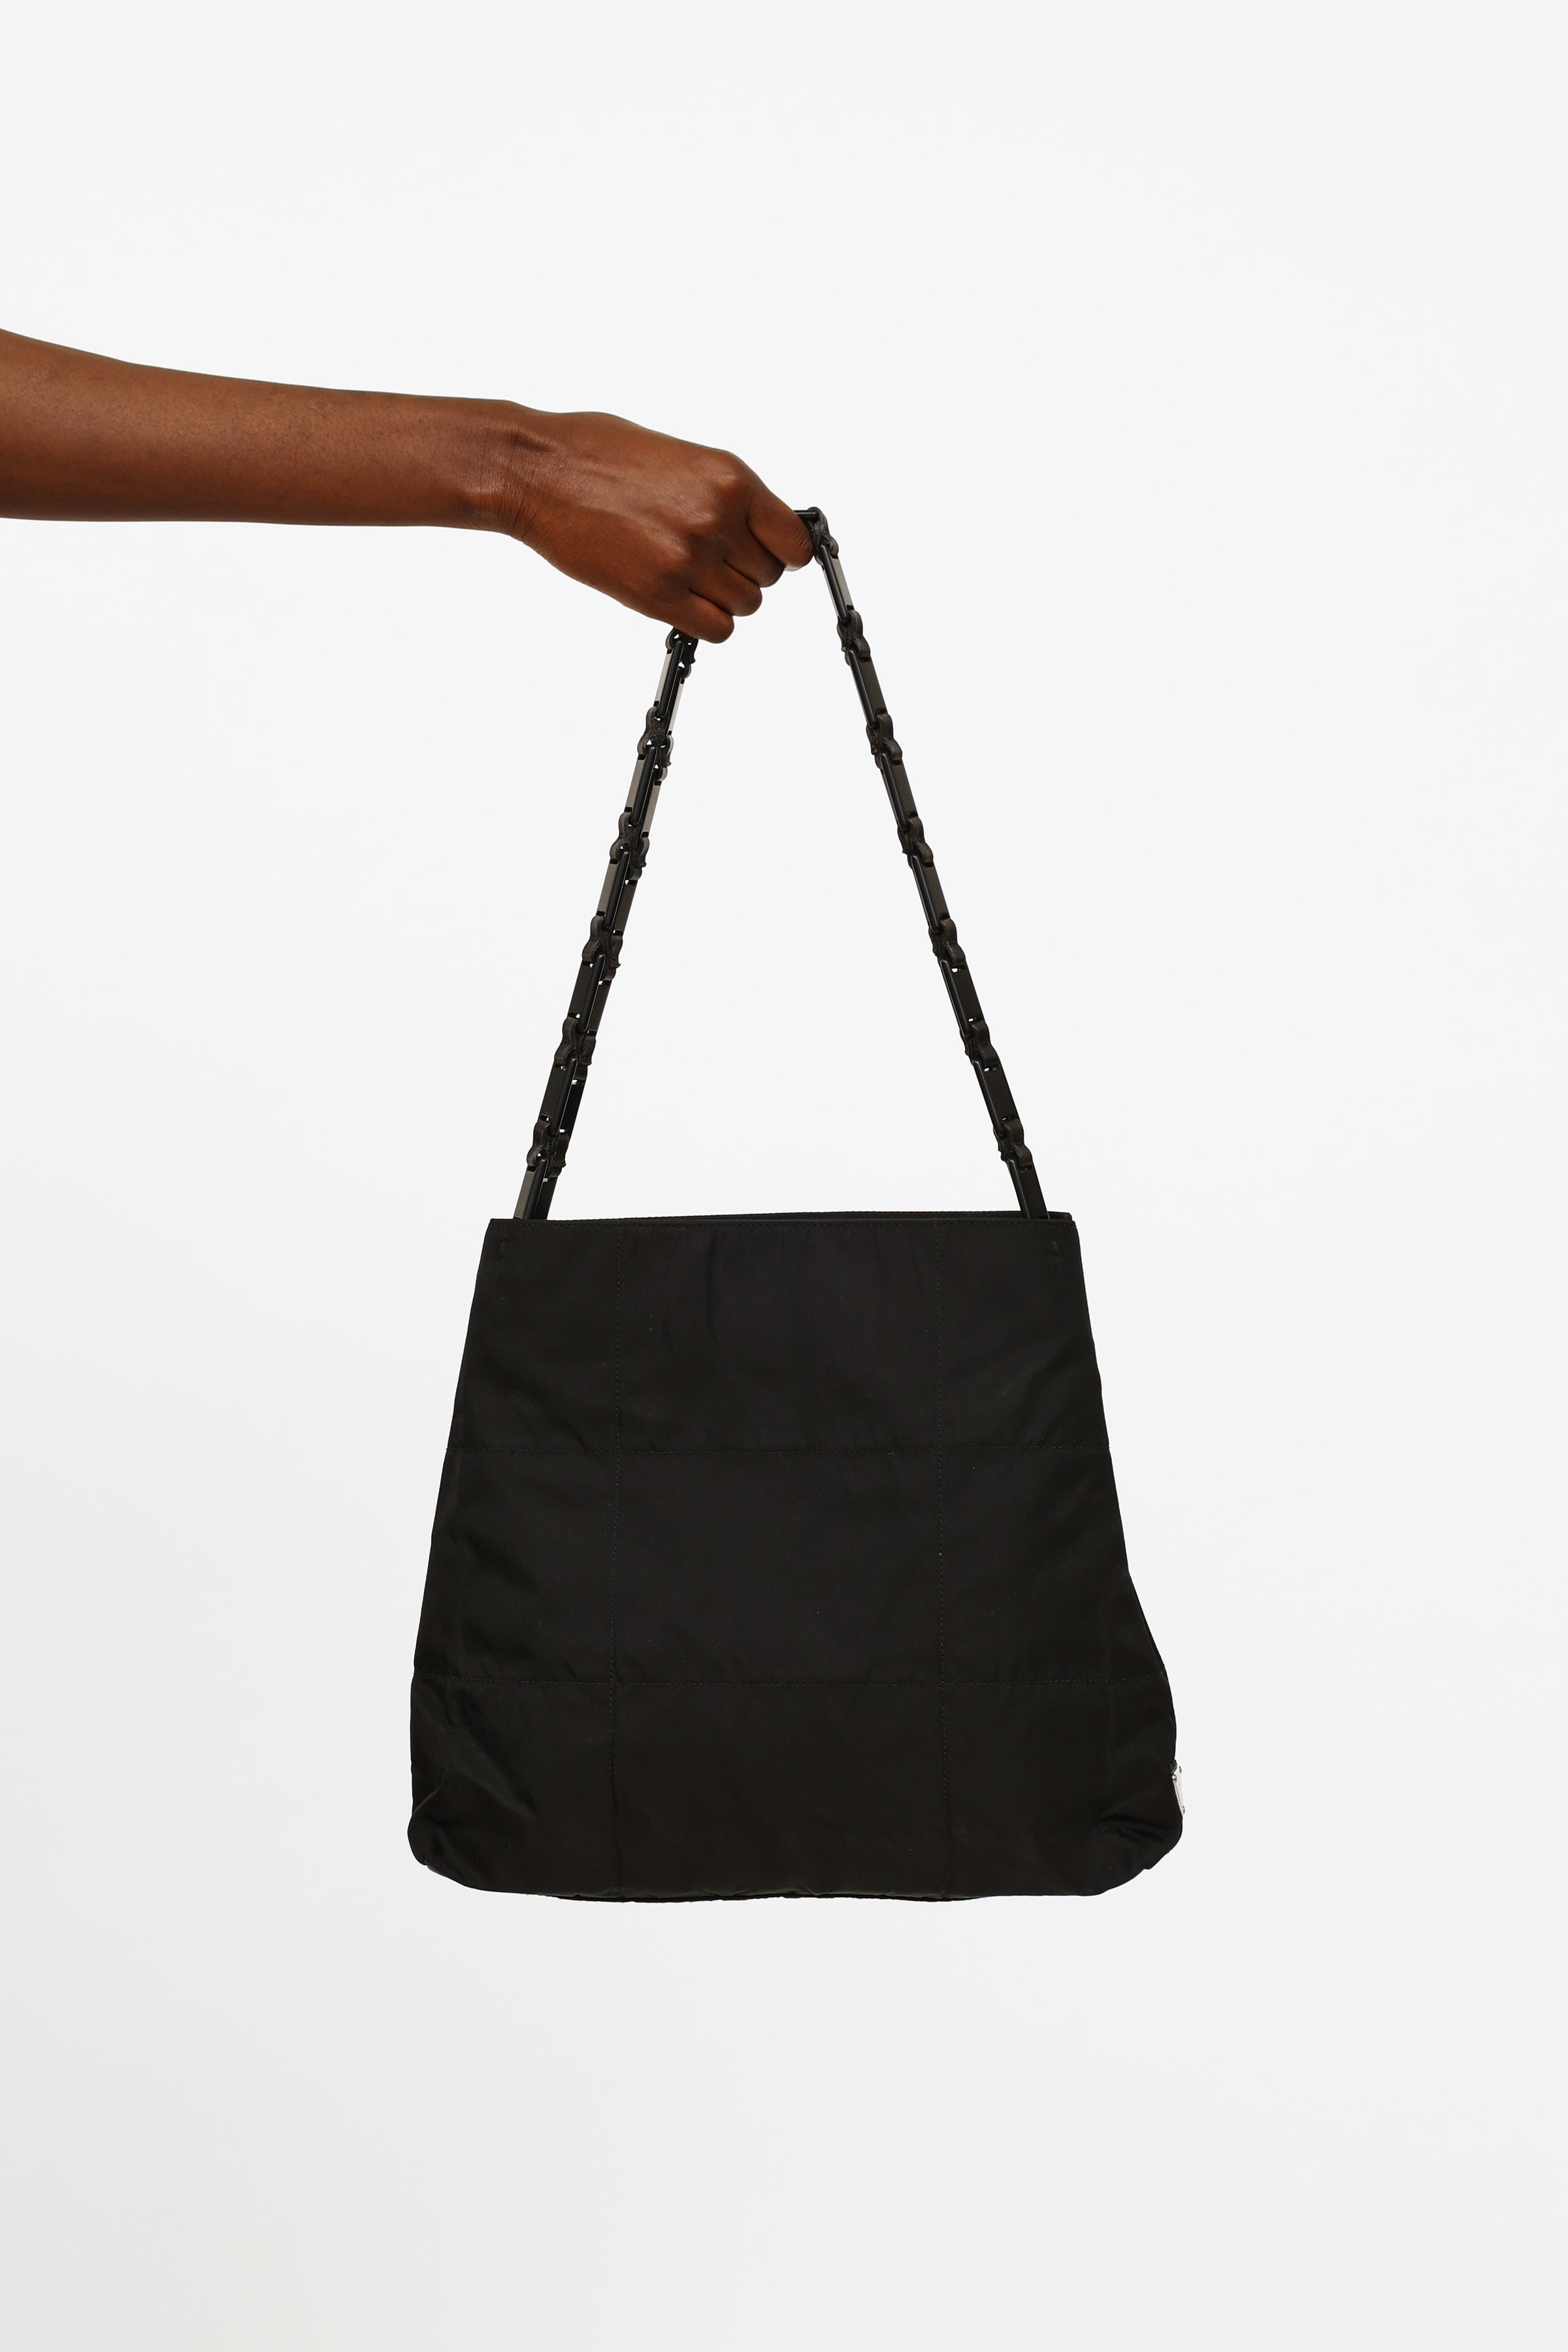 Prada Saffiano Tessuto Nylon Chain Shoulder Bag Black